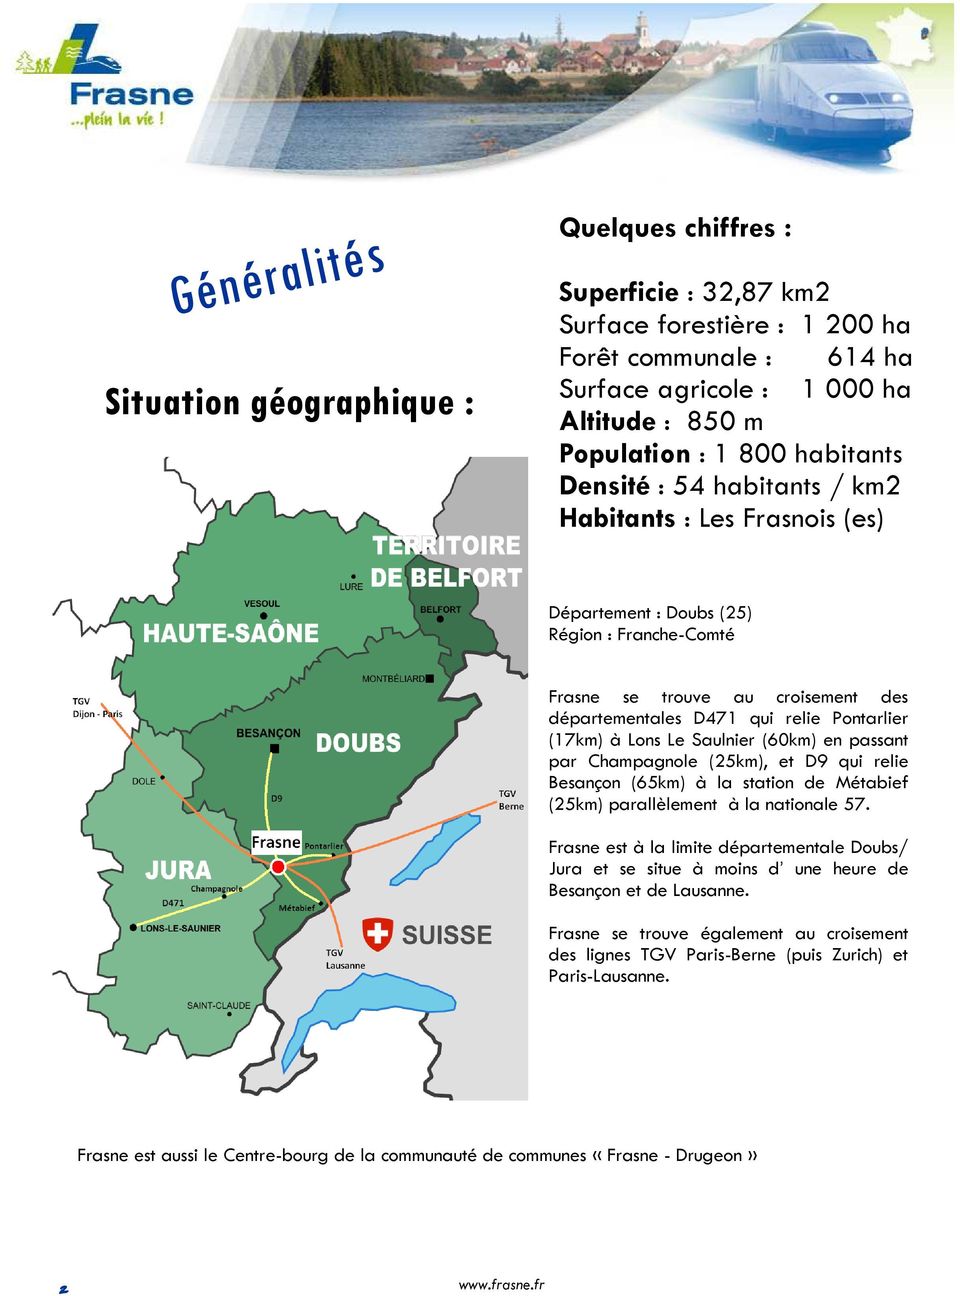 (17km) à Lons Le Saulnier (60km) en passant par Champagnole (25km), et D9 qui relie Besançon (65km) à la station de Métabief (25km) parallèlement à la nationale 57.